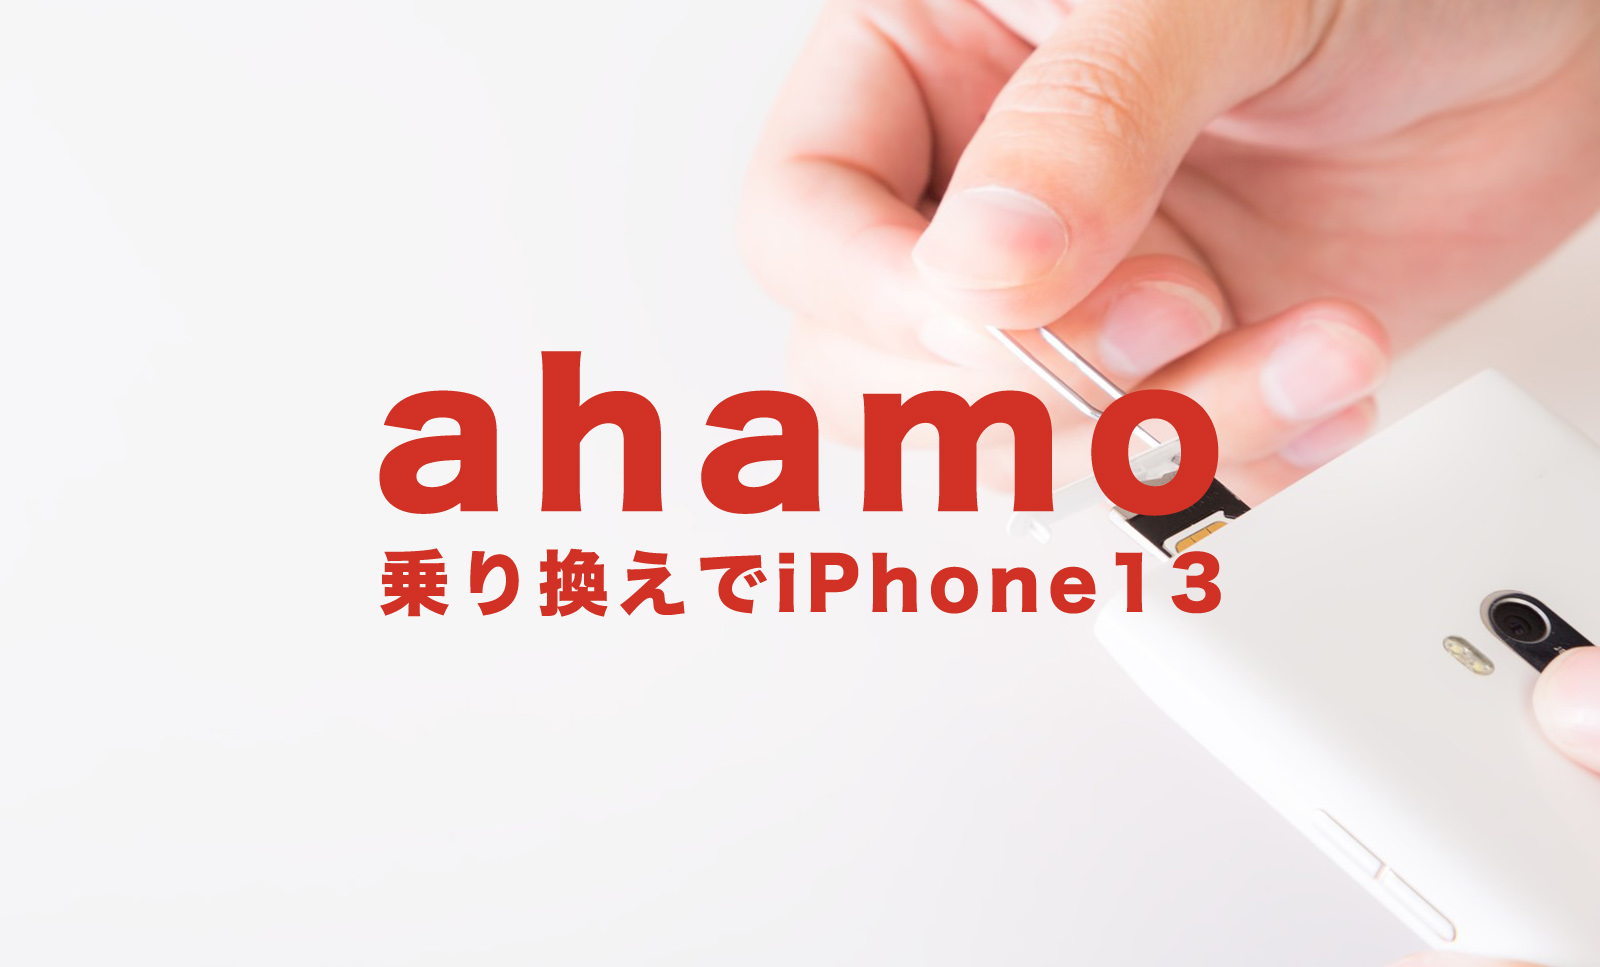 ahamo(アハモ)に乗り換えてiPhone13を使いたい場合のやり方を解説のサムネイル画像